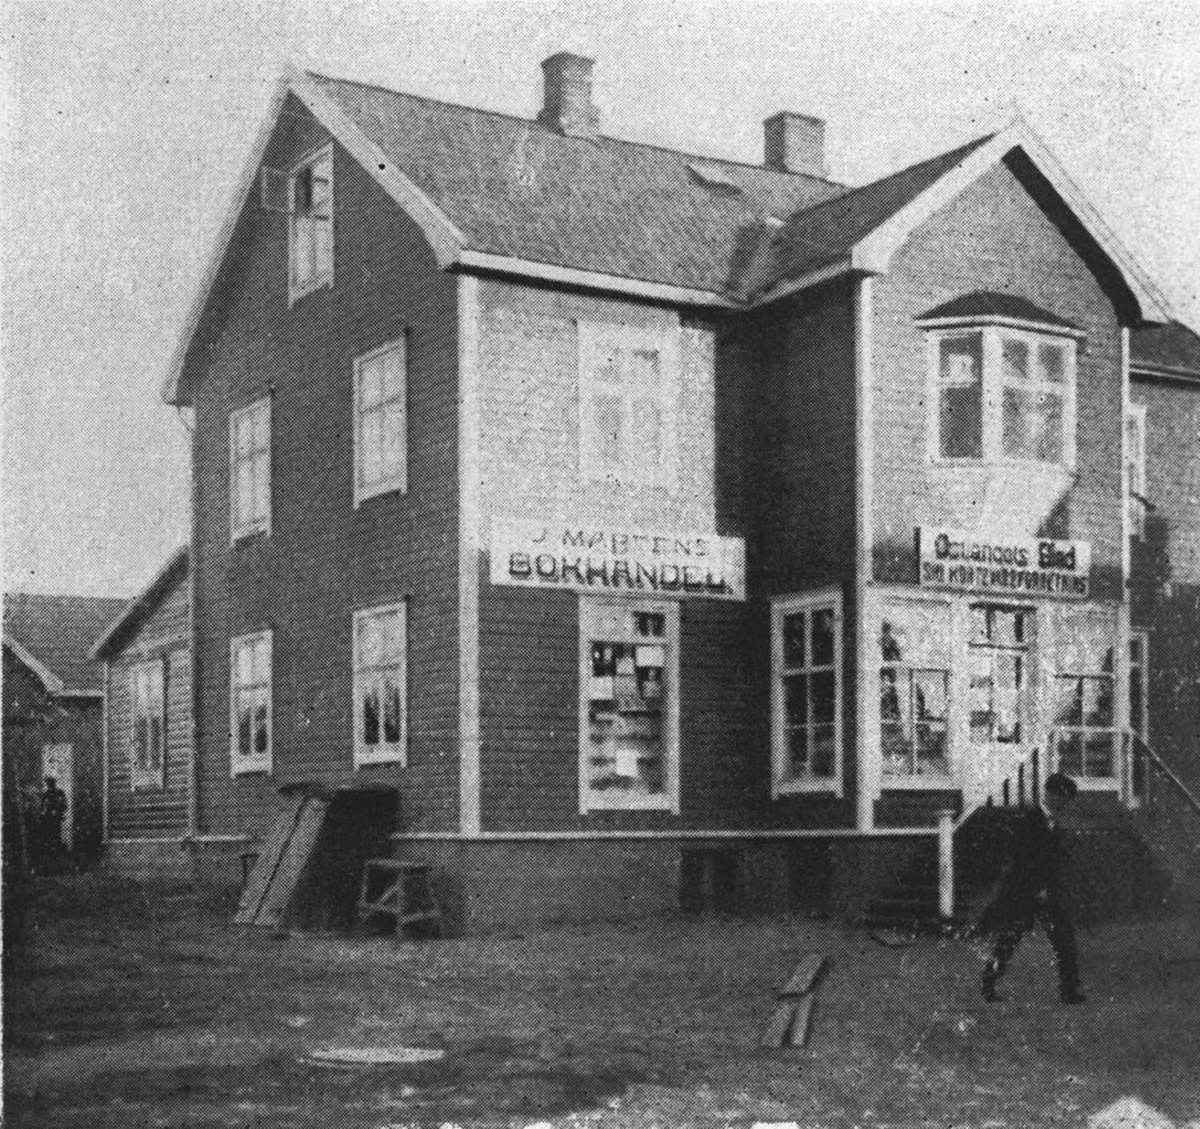 Ski Kortevareforretning. Dette var den første kortevareforretning i Ski. Den ble etablert rett før lillejulaften 1920. I 1920 ble forretningen utvidet til assortert bokhandel. I 1925 beskjeftighet forretningen 3-4 personer.